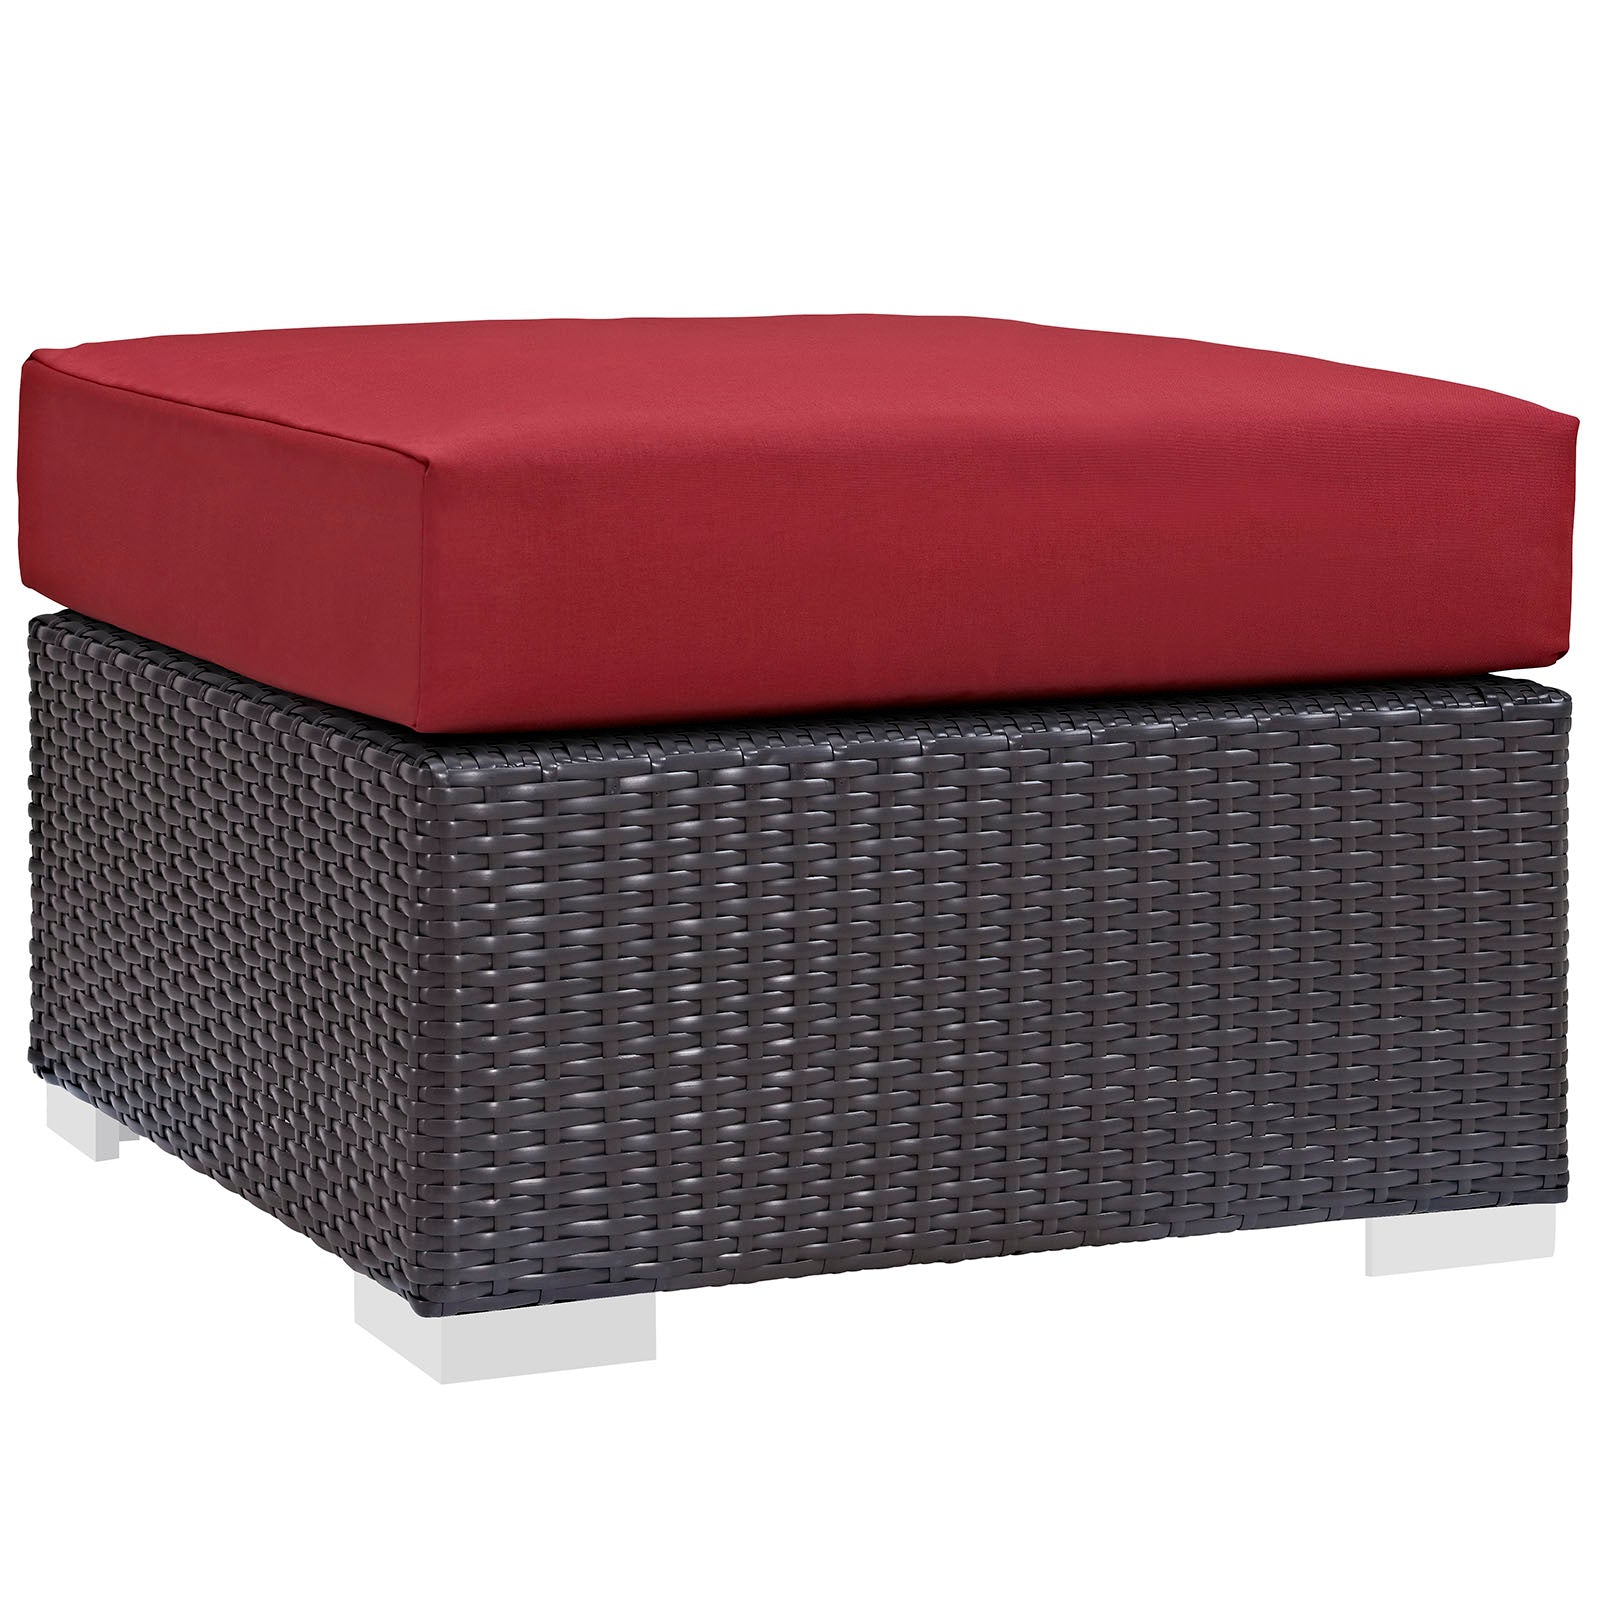 Modway Outdoor Conversation Sets - Convene 8 Piece Outdoor Patio Sofa Set Espresso Red